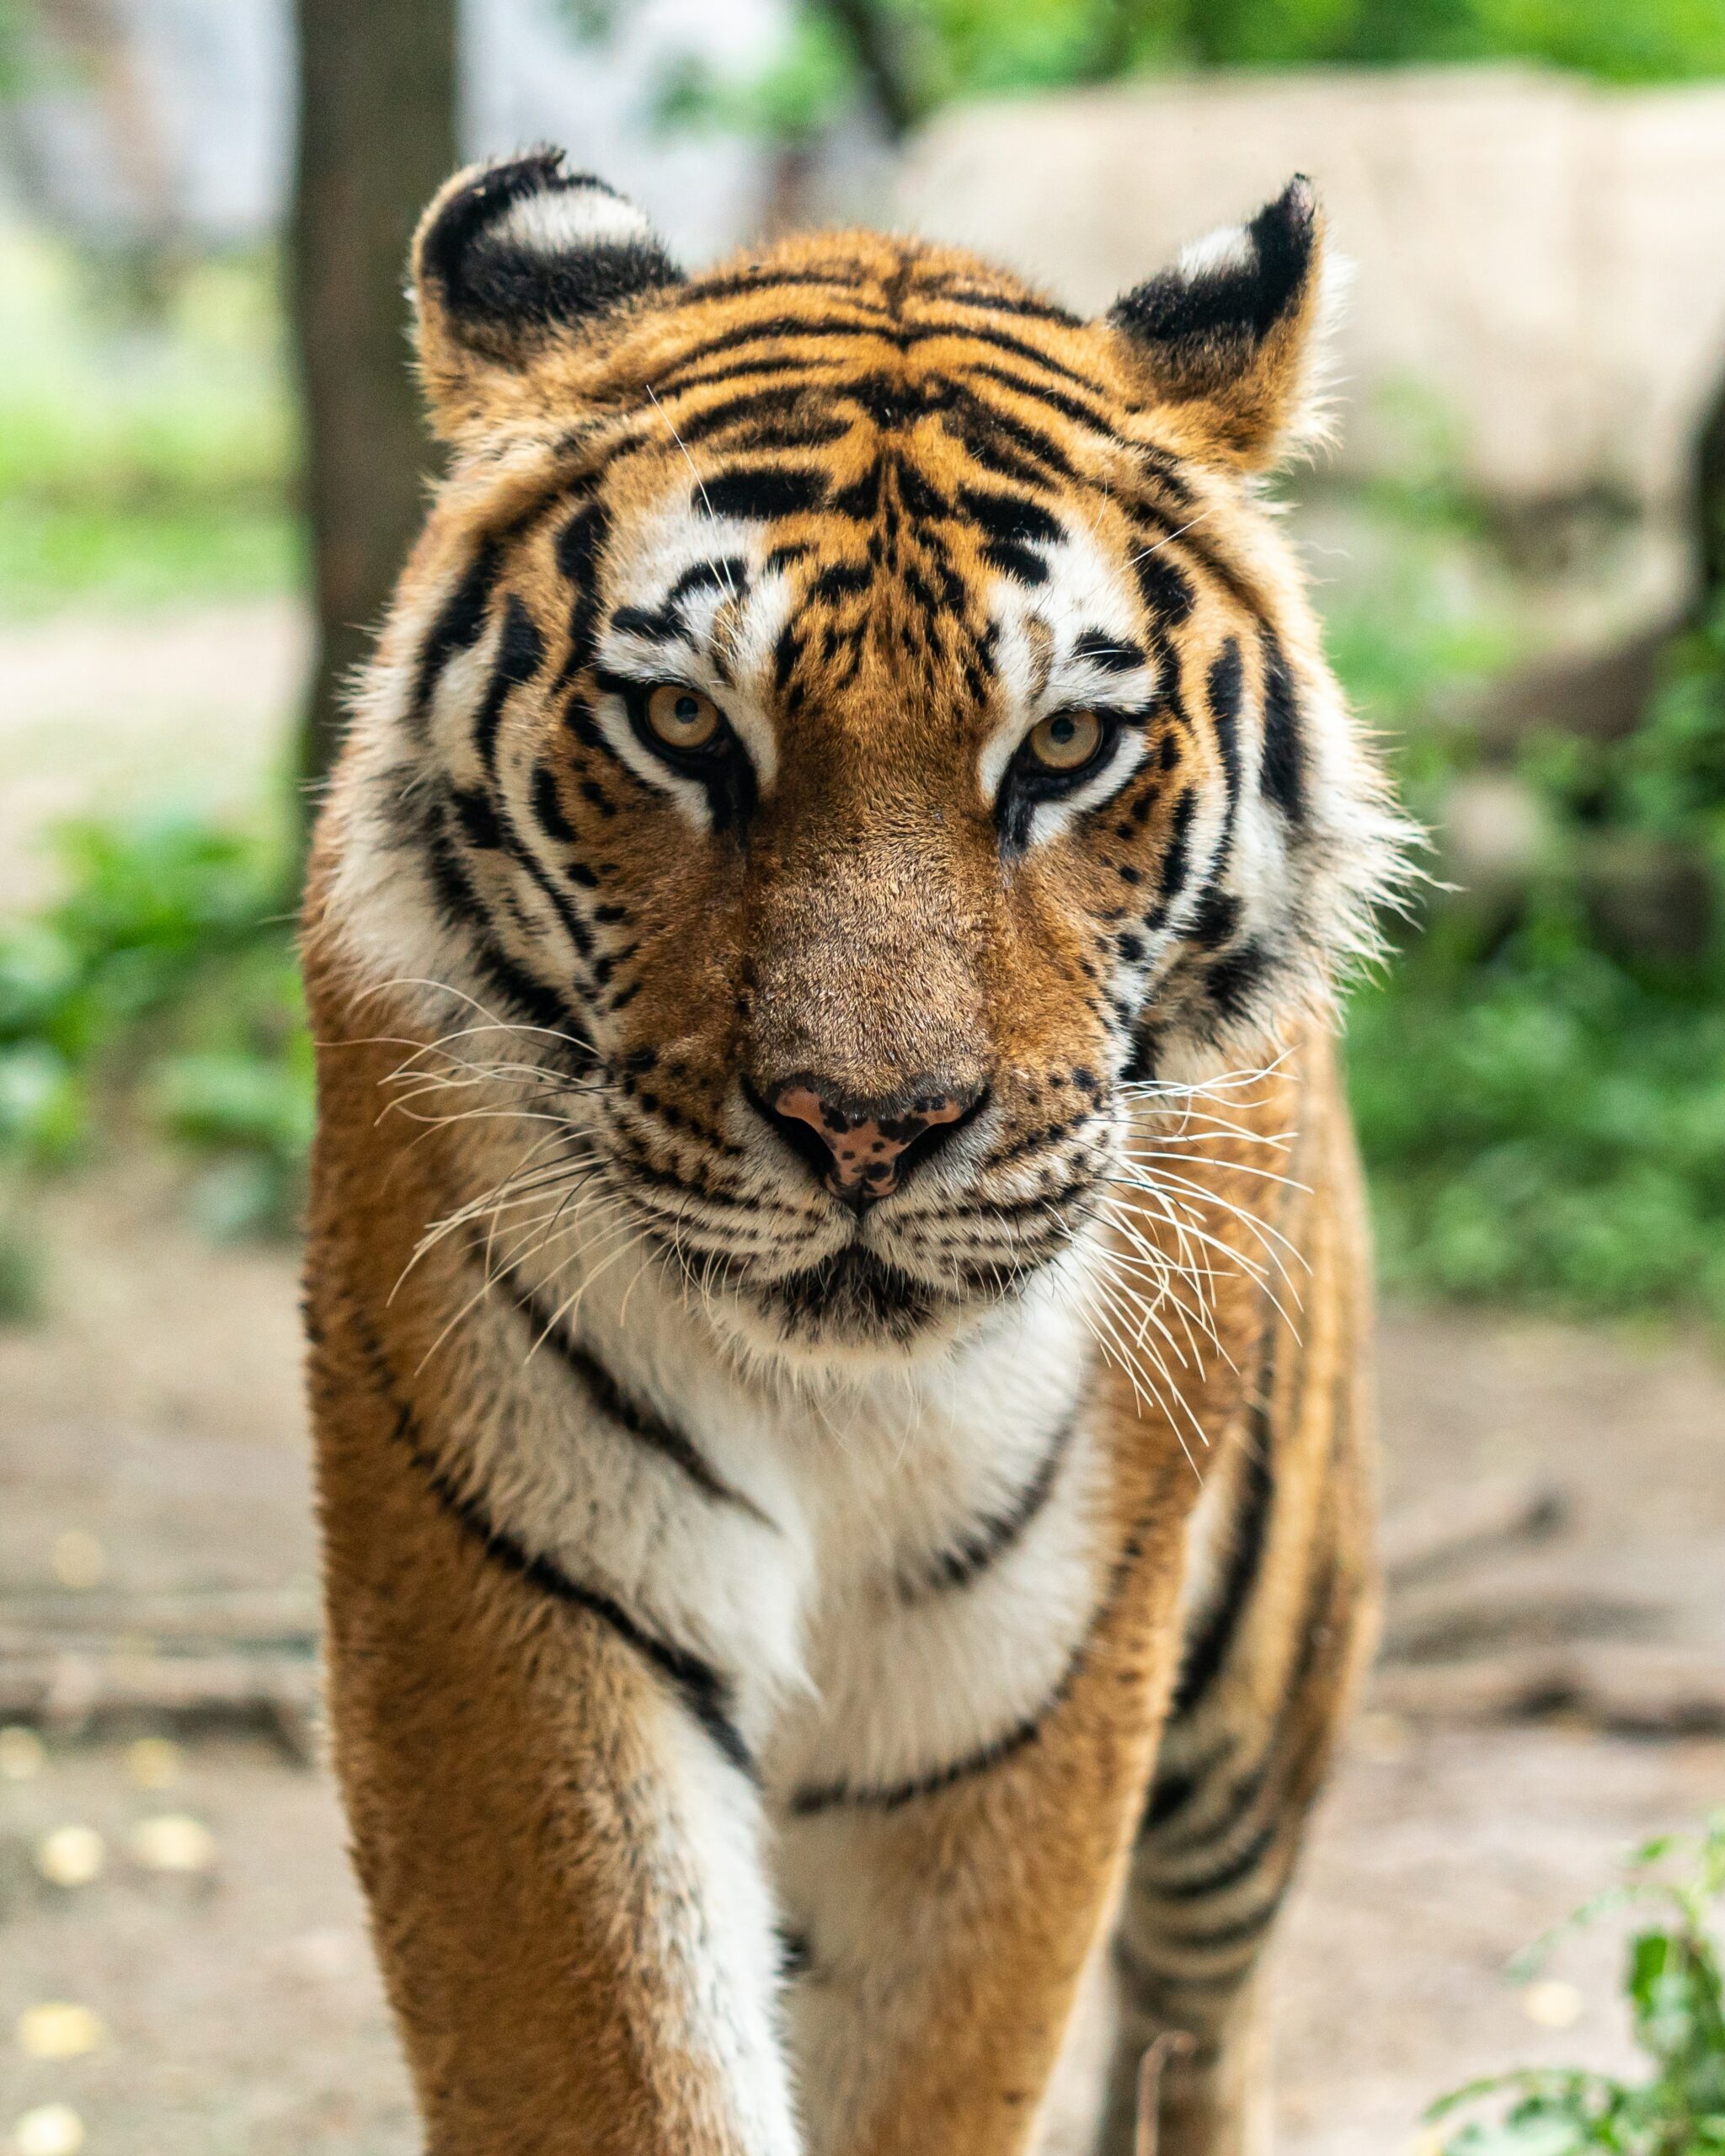 tiger looking at camera